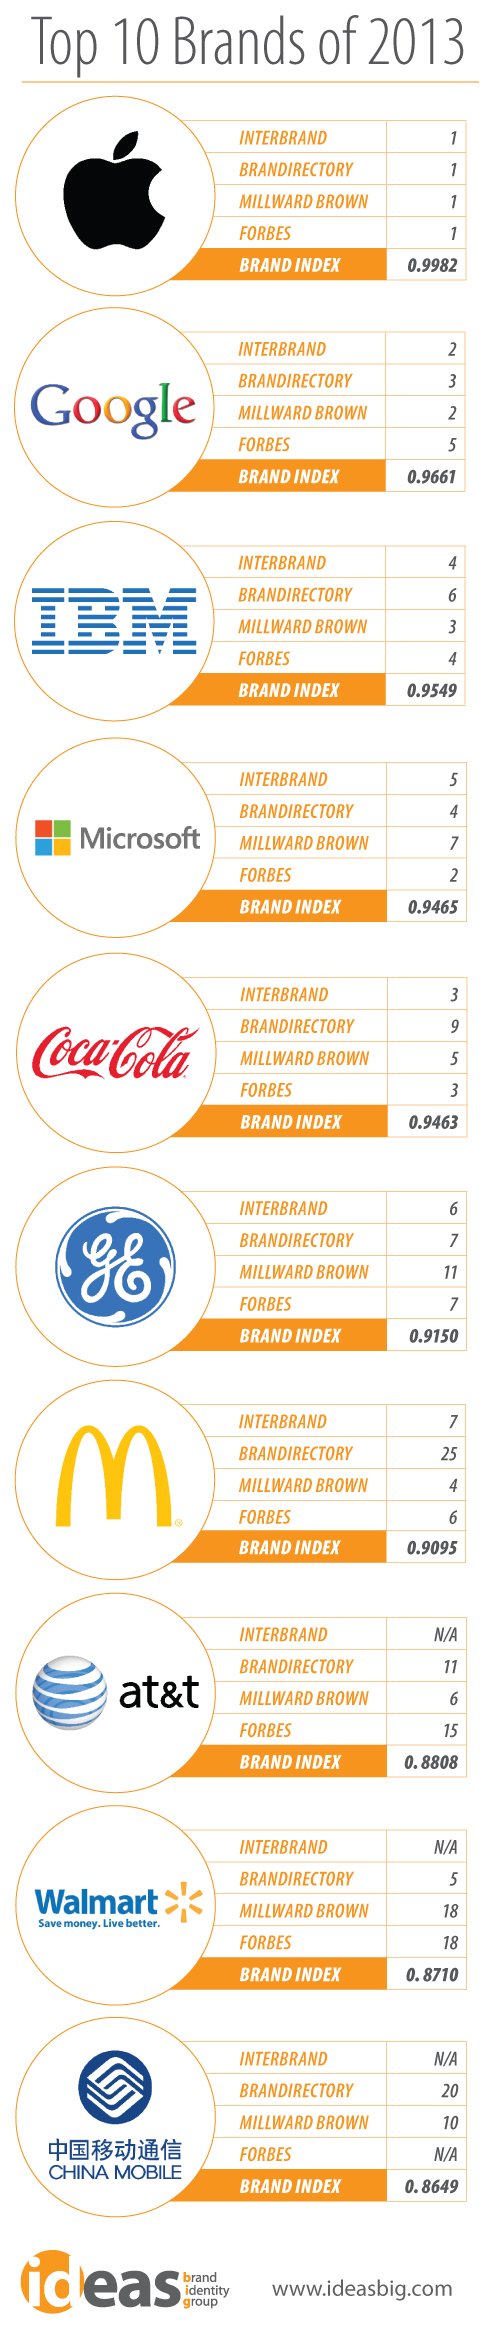 Top Global Brands of 2013